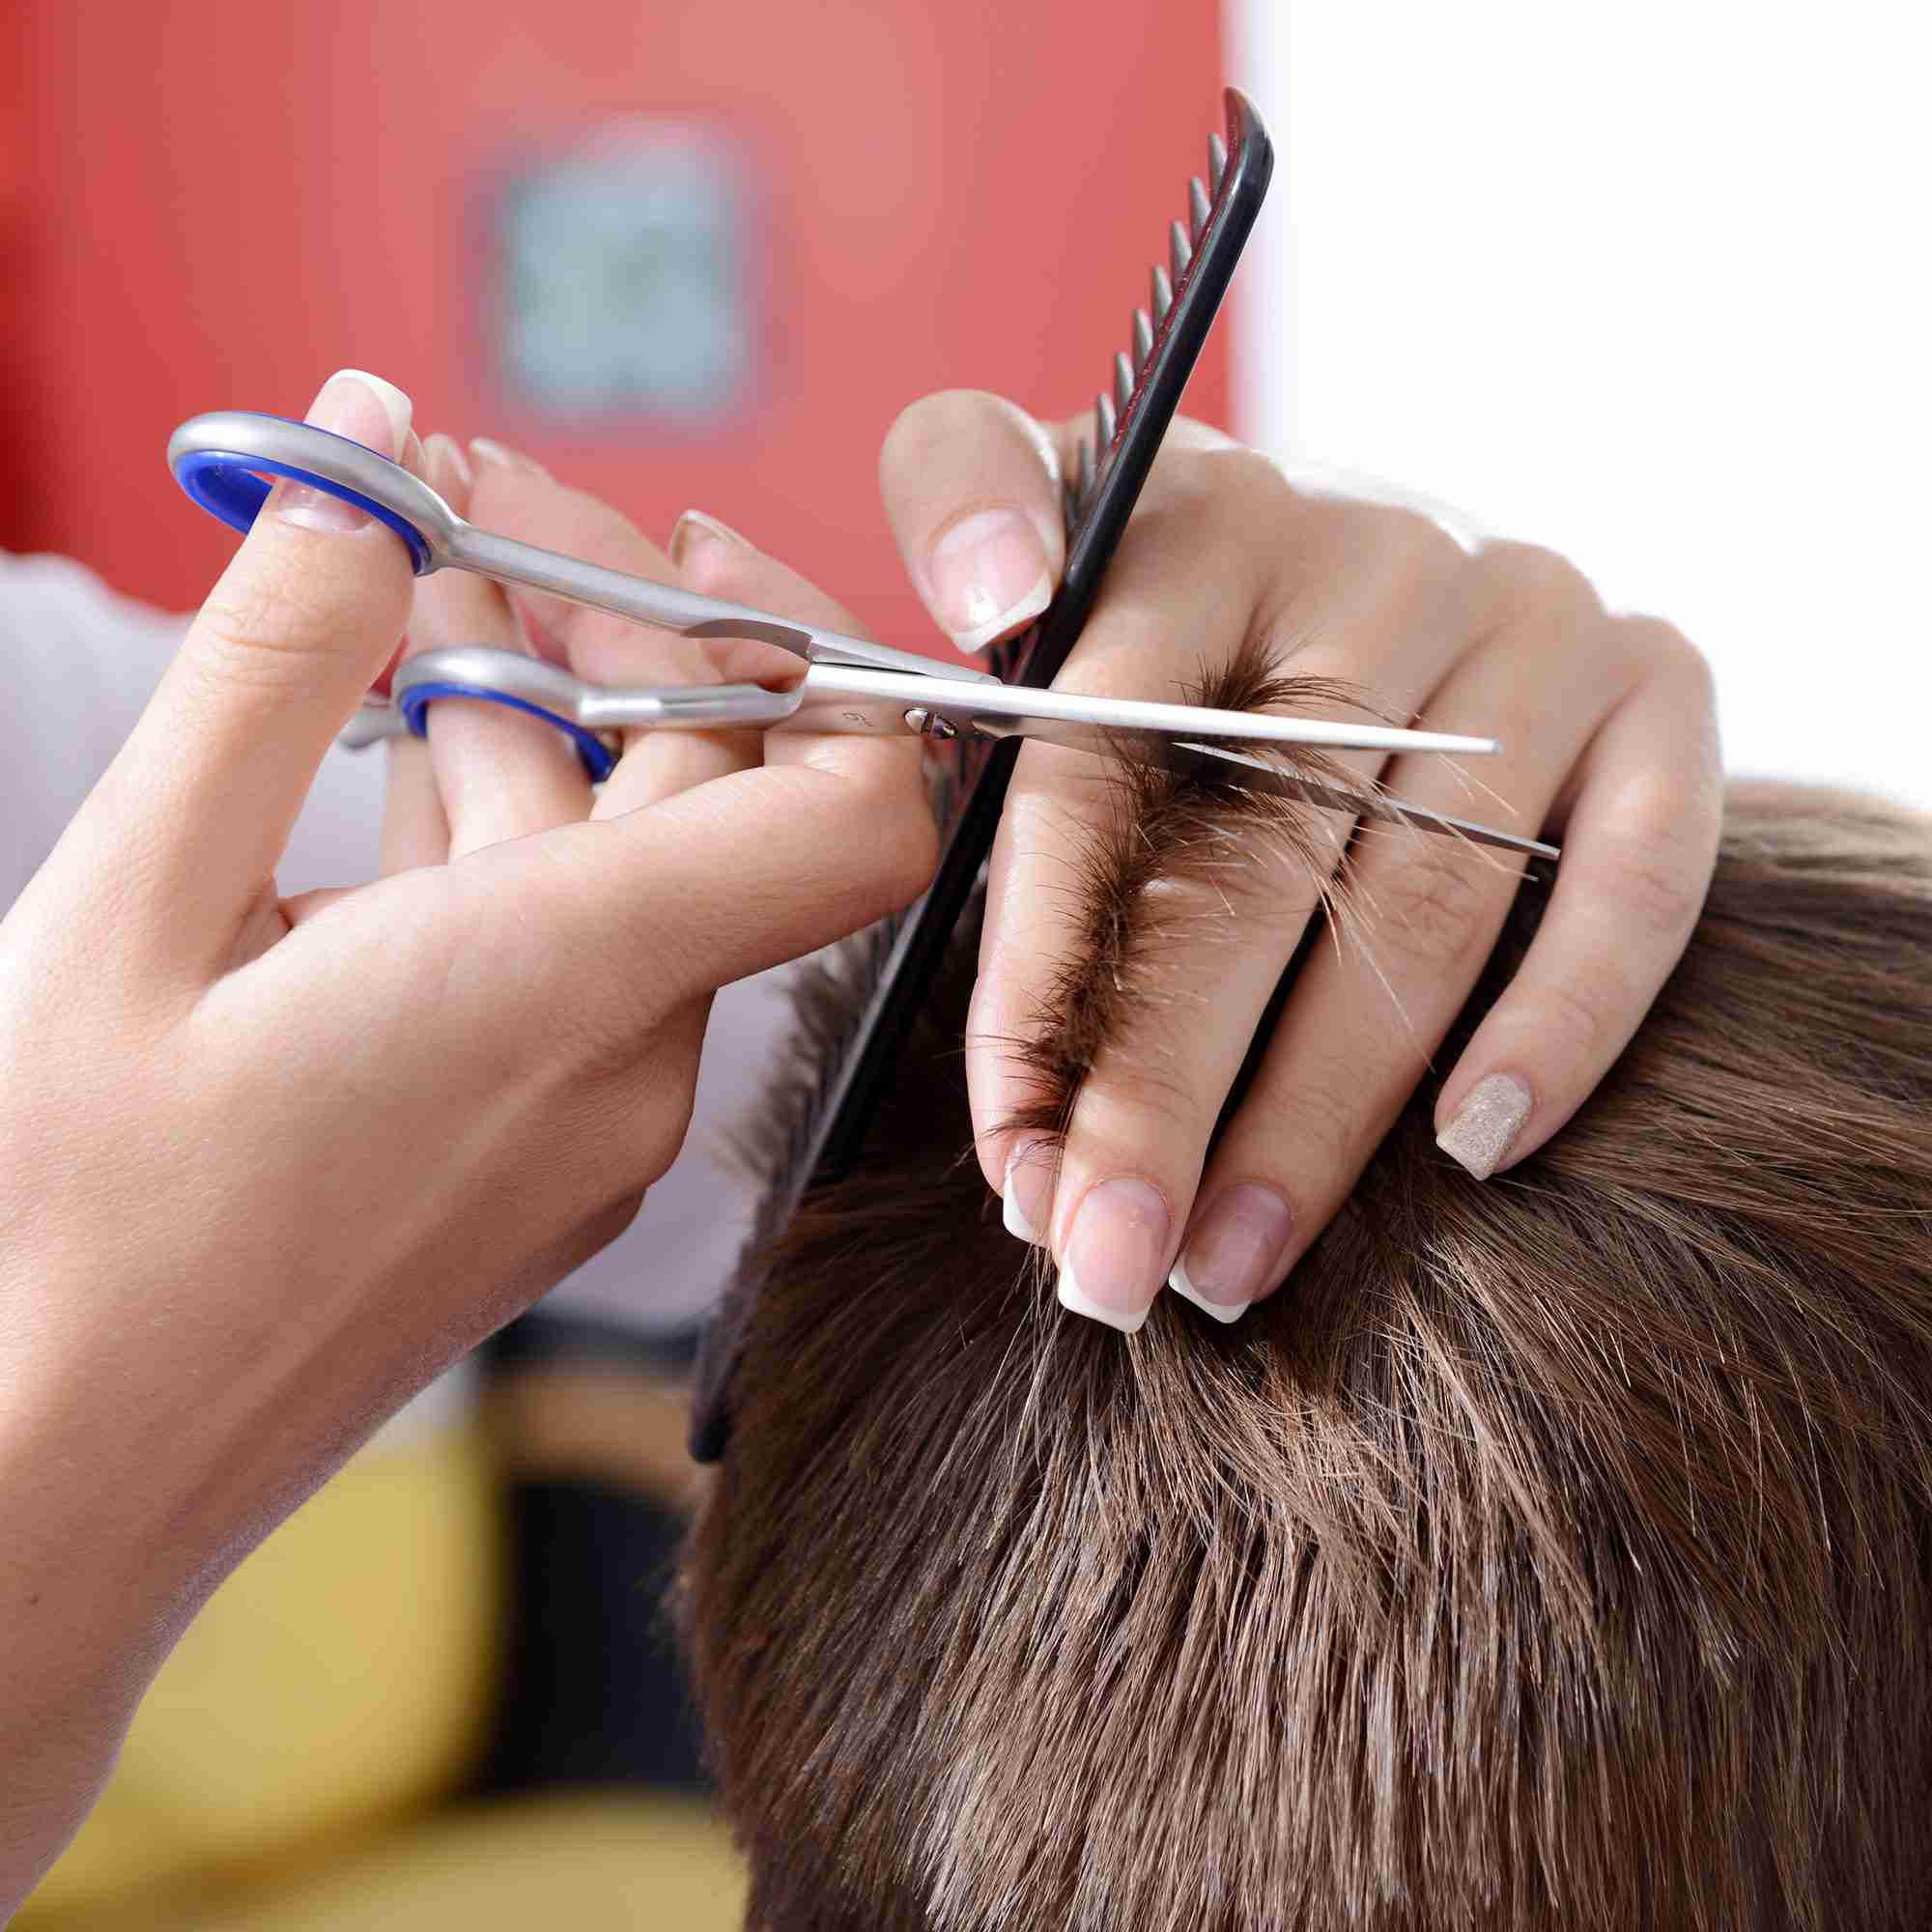 hair-cutting-shears-kit for cheap